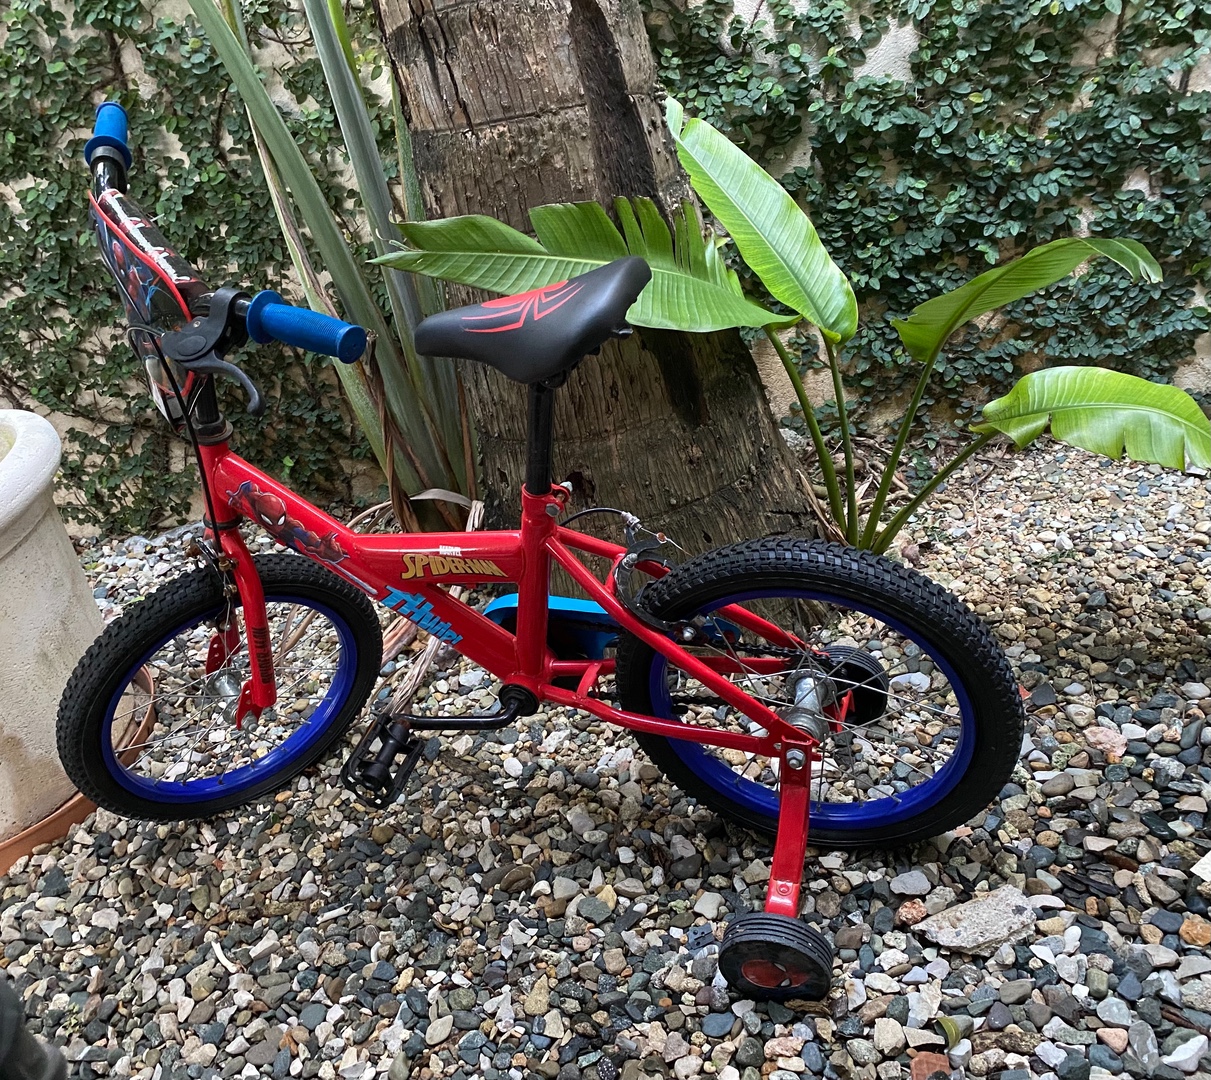 juguetes - Bicicleta 